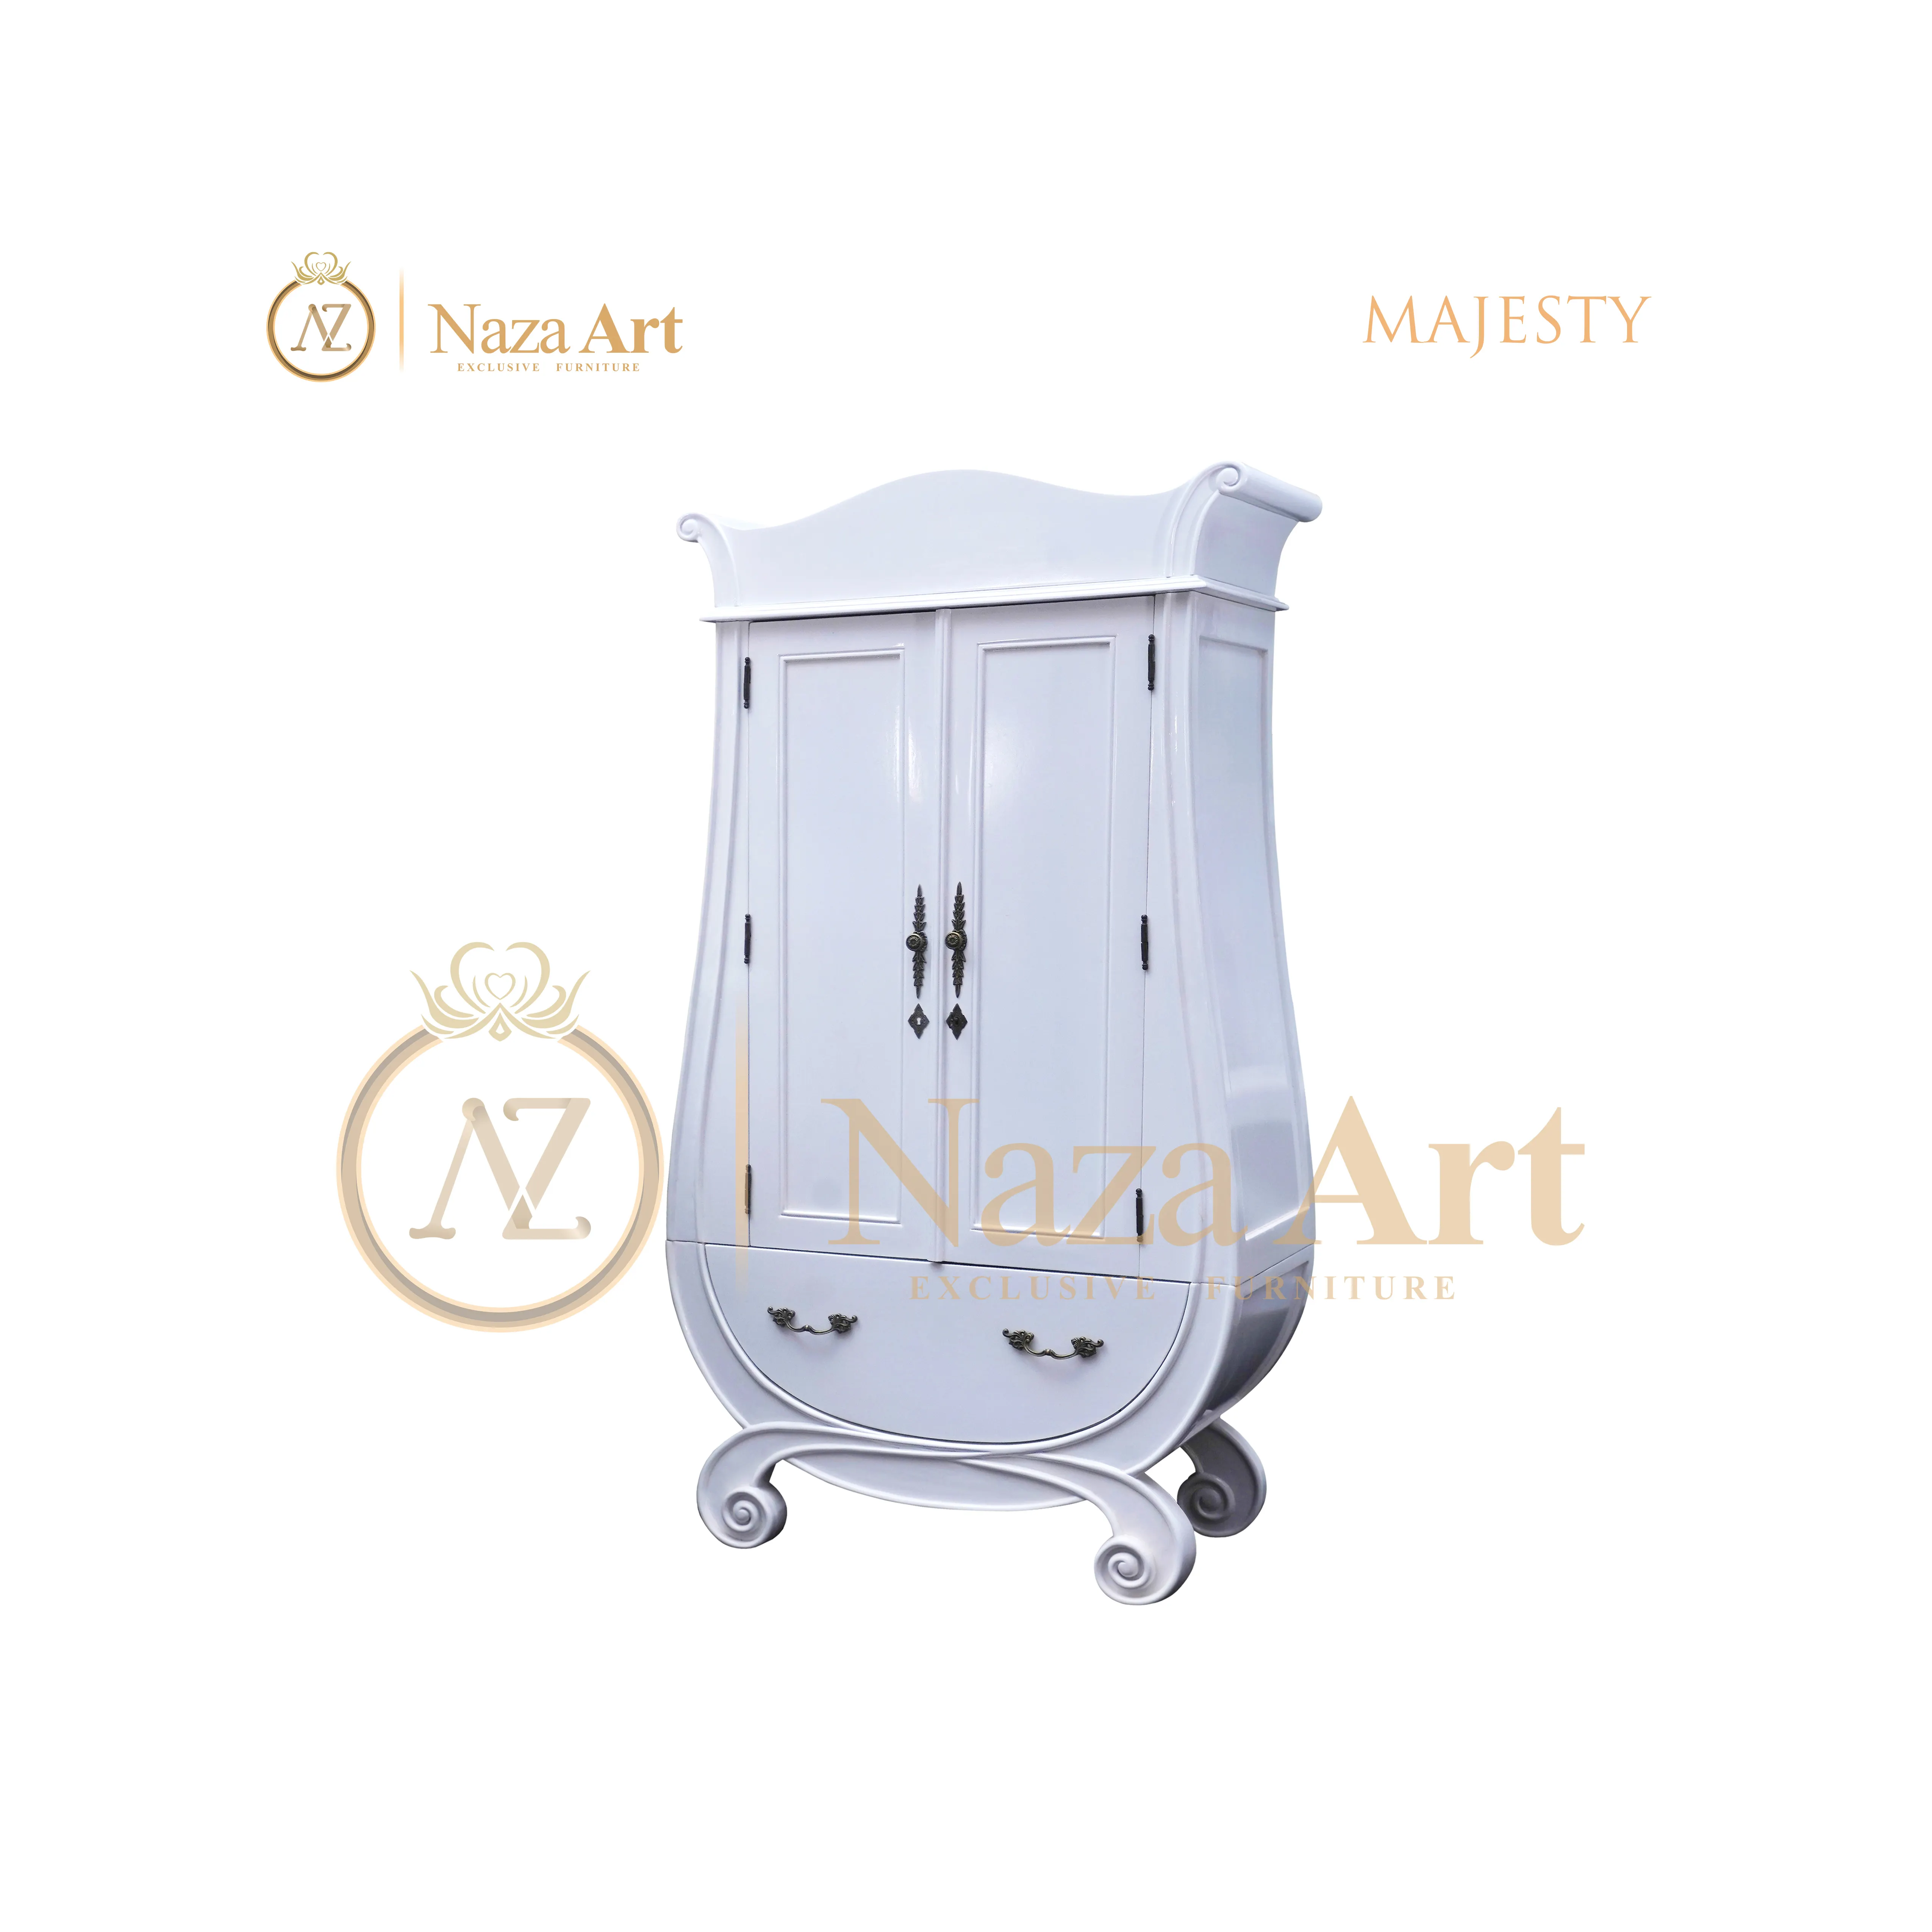 O majesty bebê feito a partir de exibição guarda-roupas com design exclusivo armário para móveis do bebê